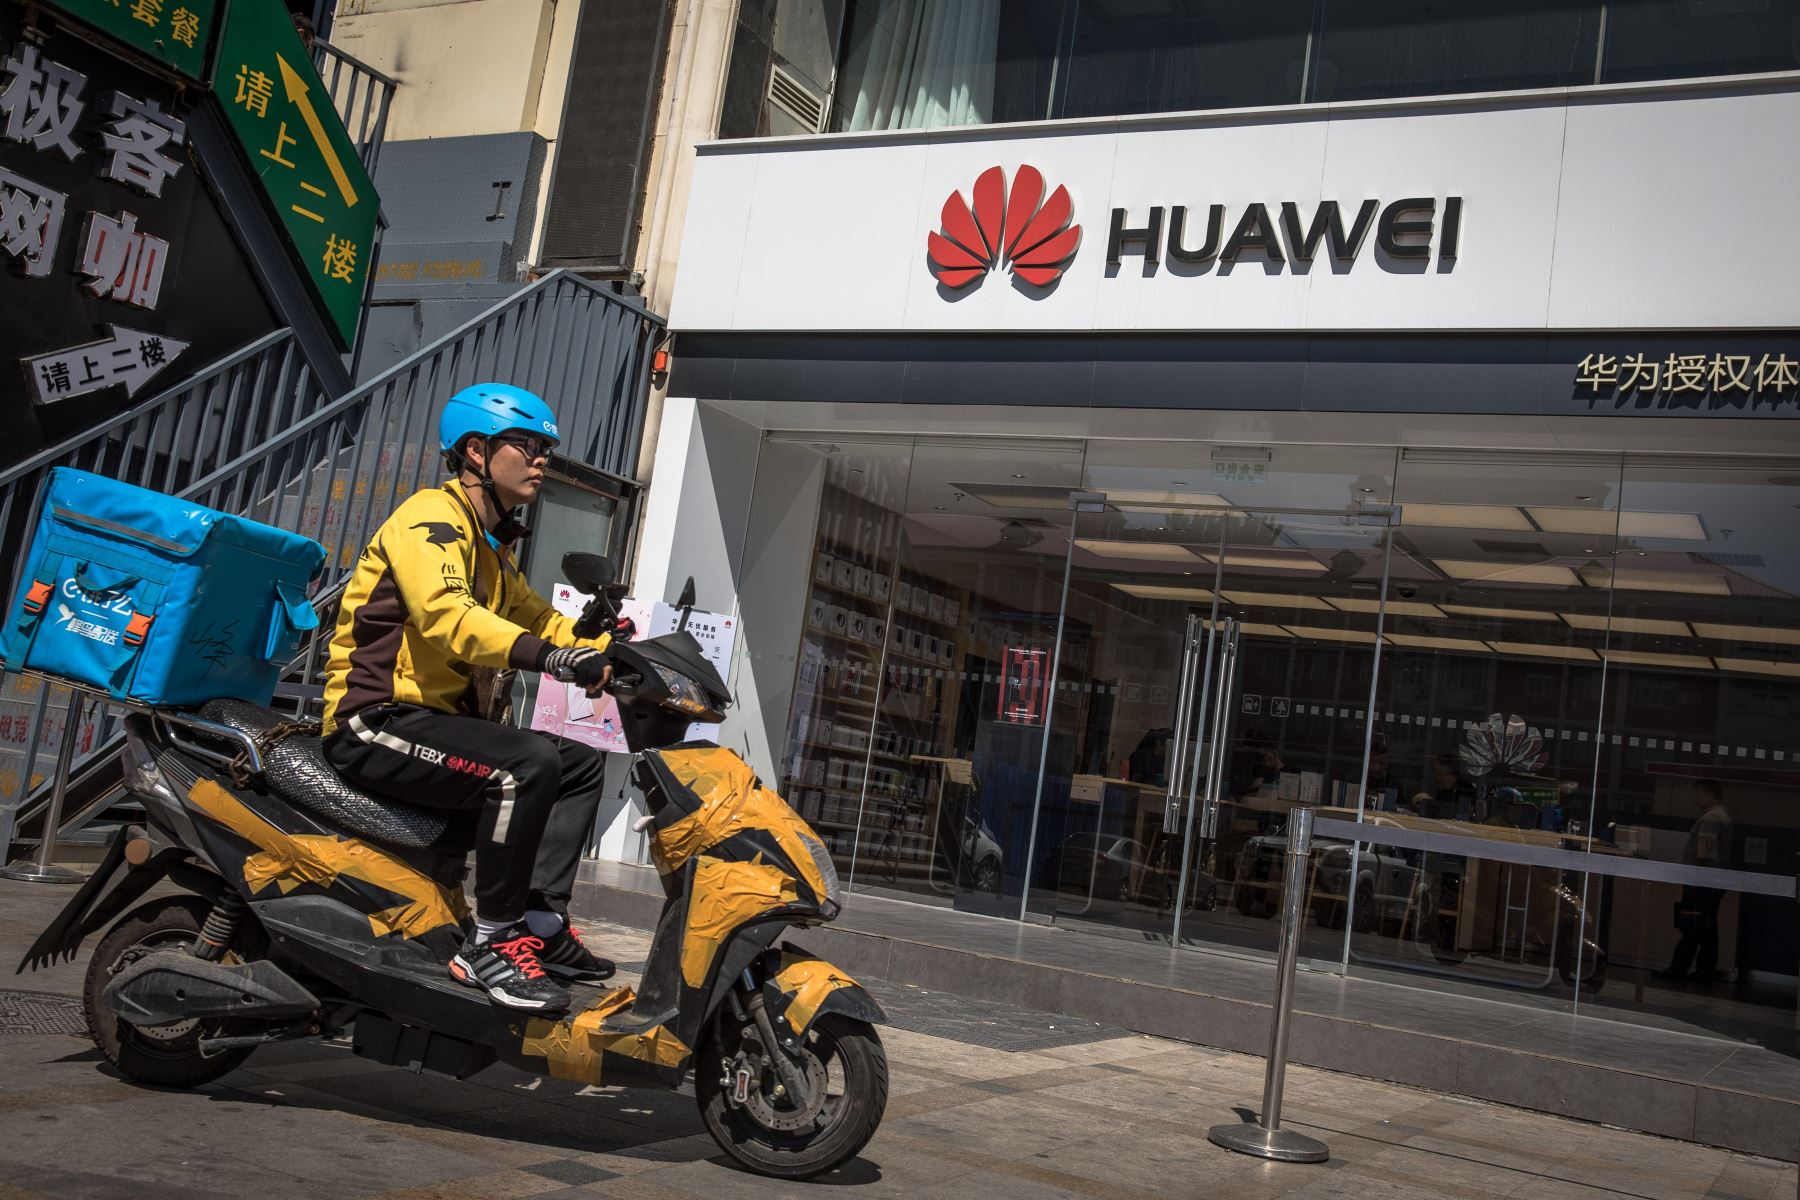 Un repartidor monta en motocicleta frente a una tienda de Huawei, este lunes en Pekín (China). El veto de Google y otras tecnológicas estadounidenses a Huawei podría frustrar la aspiración del fabricante chino de convertirse en breve en el mayor fabricante de móviles del mundo, donde aún está por detrás de Samsung pese a vender más de siete móviles por segundo. Foto: EFE